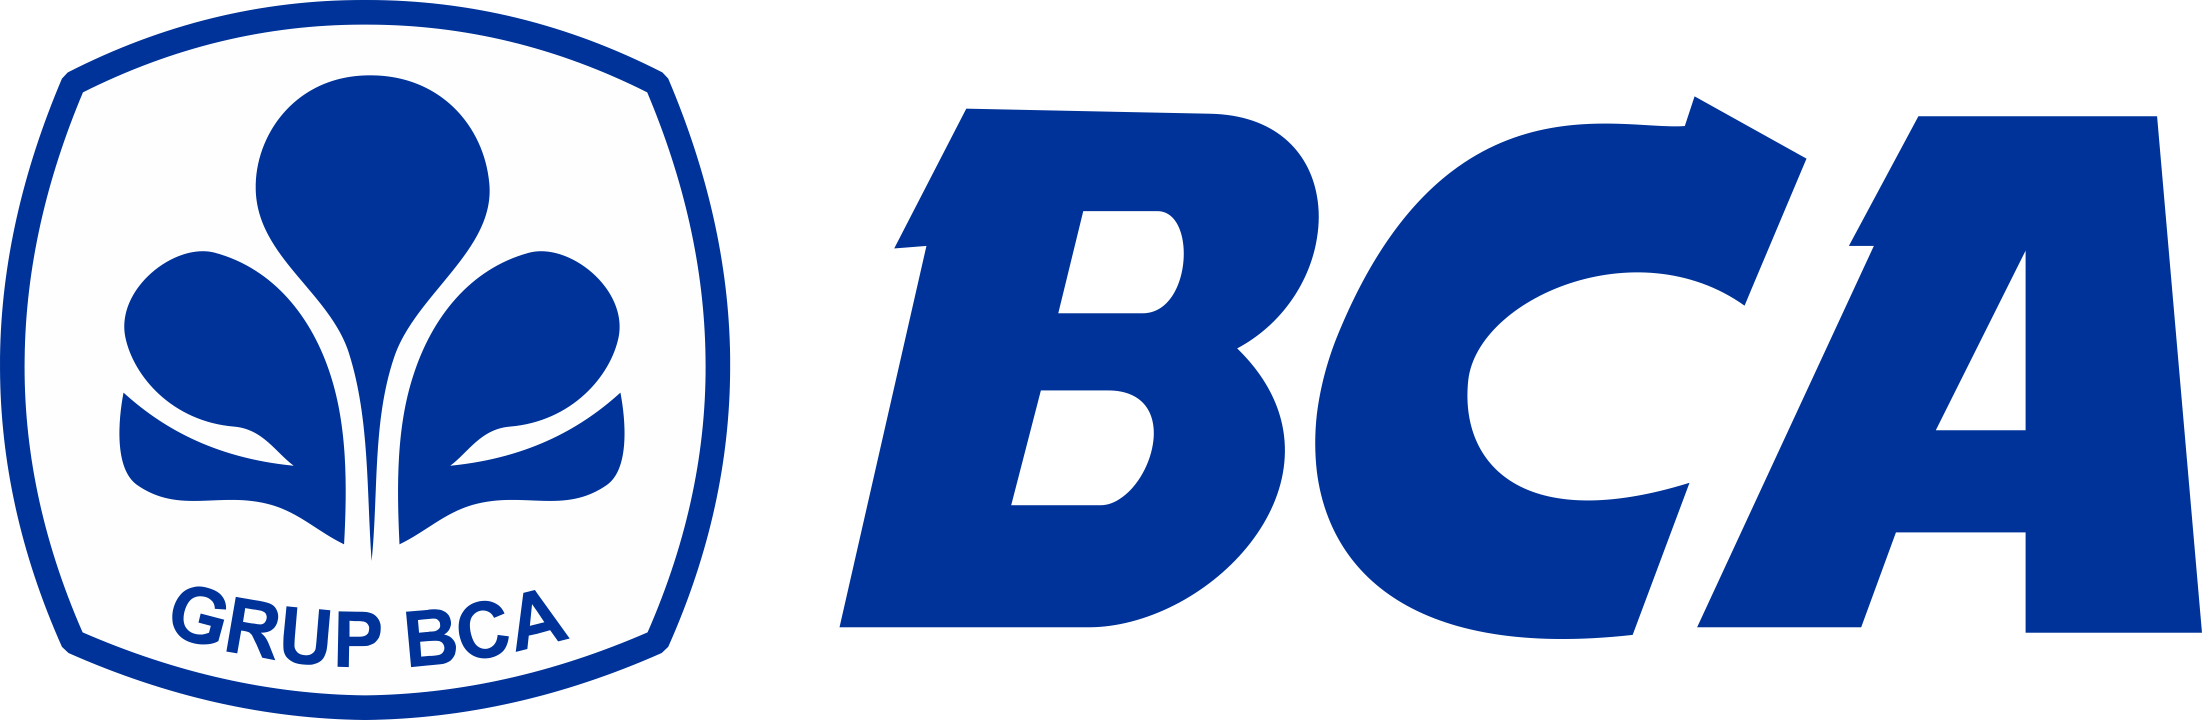 Bank-BCA-Logo-PNG-720p-FileVector69-1-1-1-1-2.png